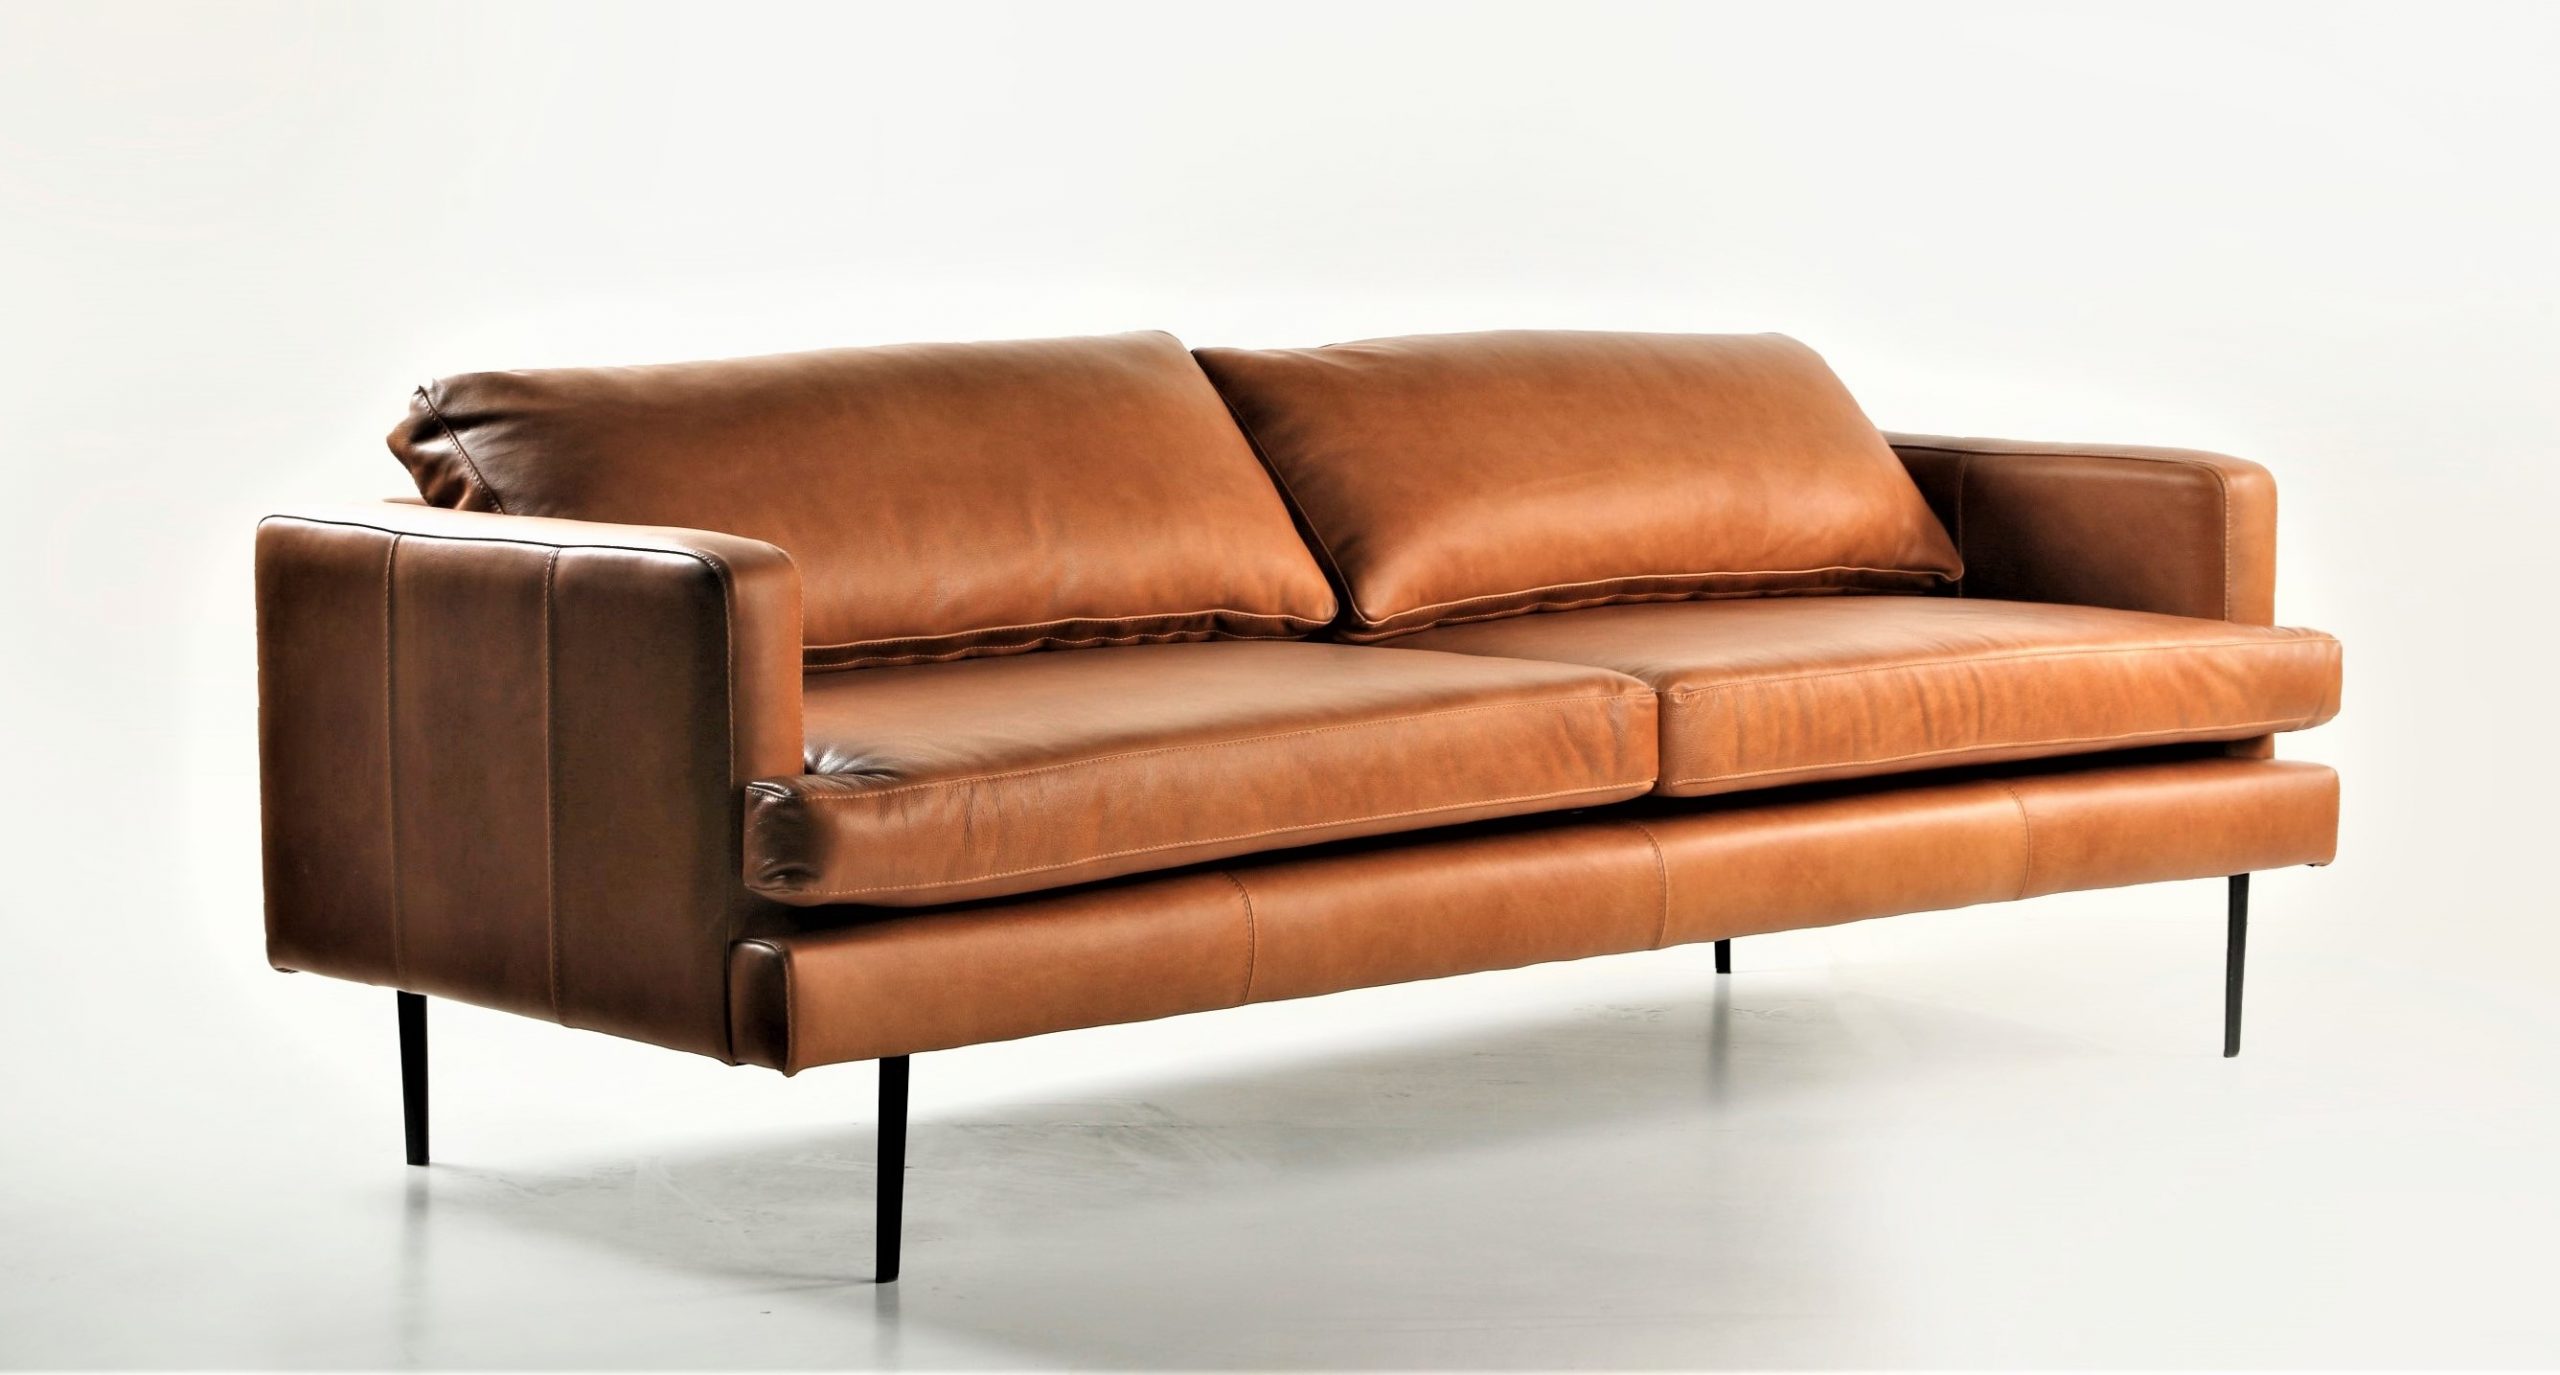 Sofa de Cuero – Slim Sasiori Color Fargo Tan, 200cm Ancho, Cojines asiento y respaldo sin costuras, Cuero 100% Natural Uruguayo